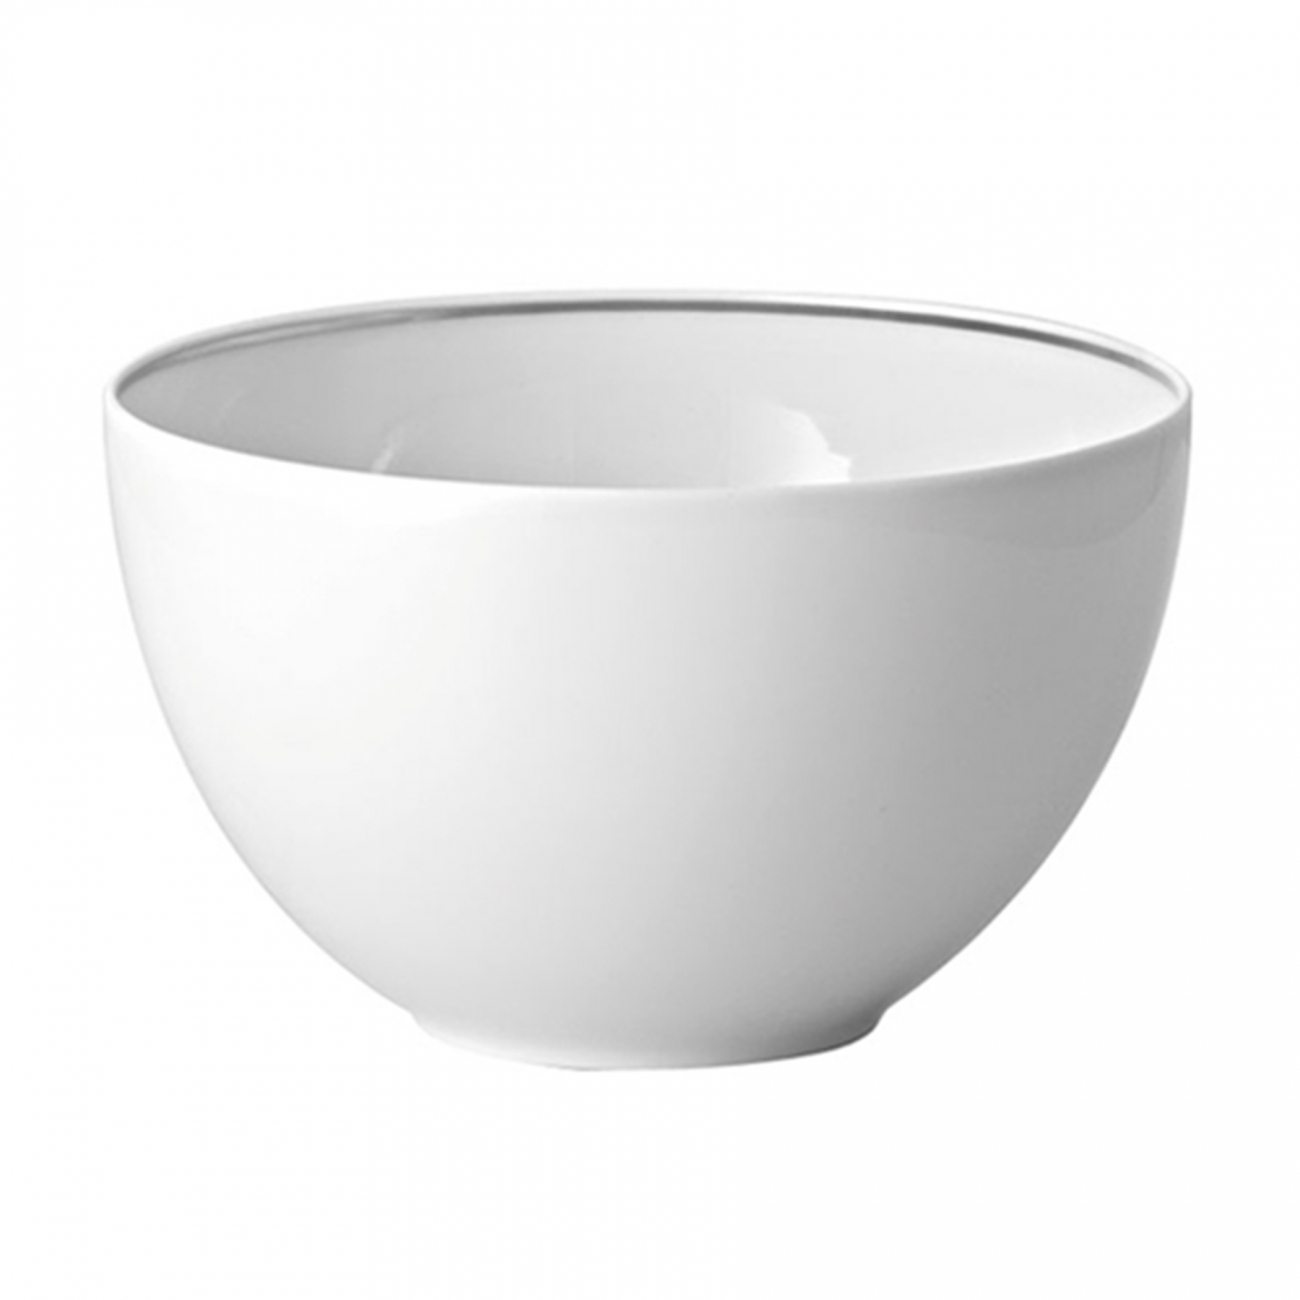 Rosenthal TAC Platin Multi-functional bowl